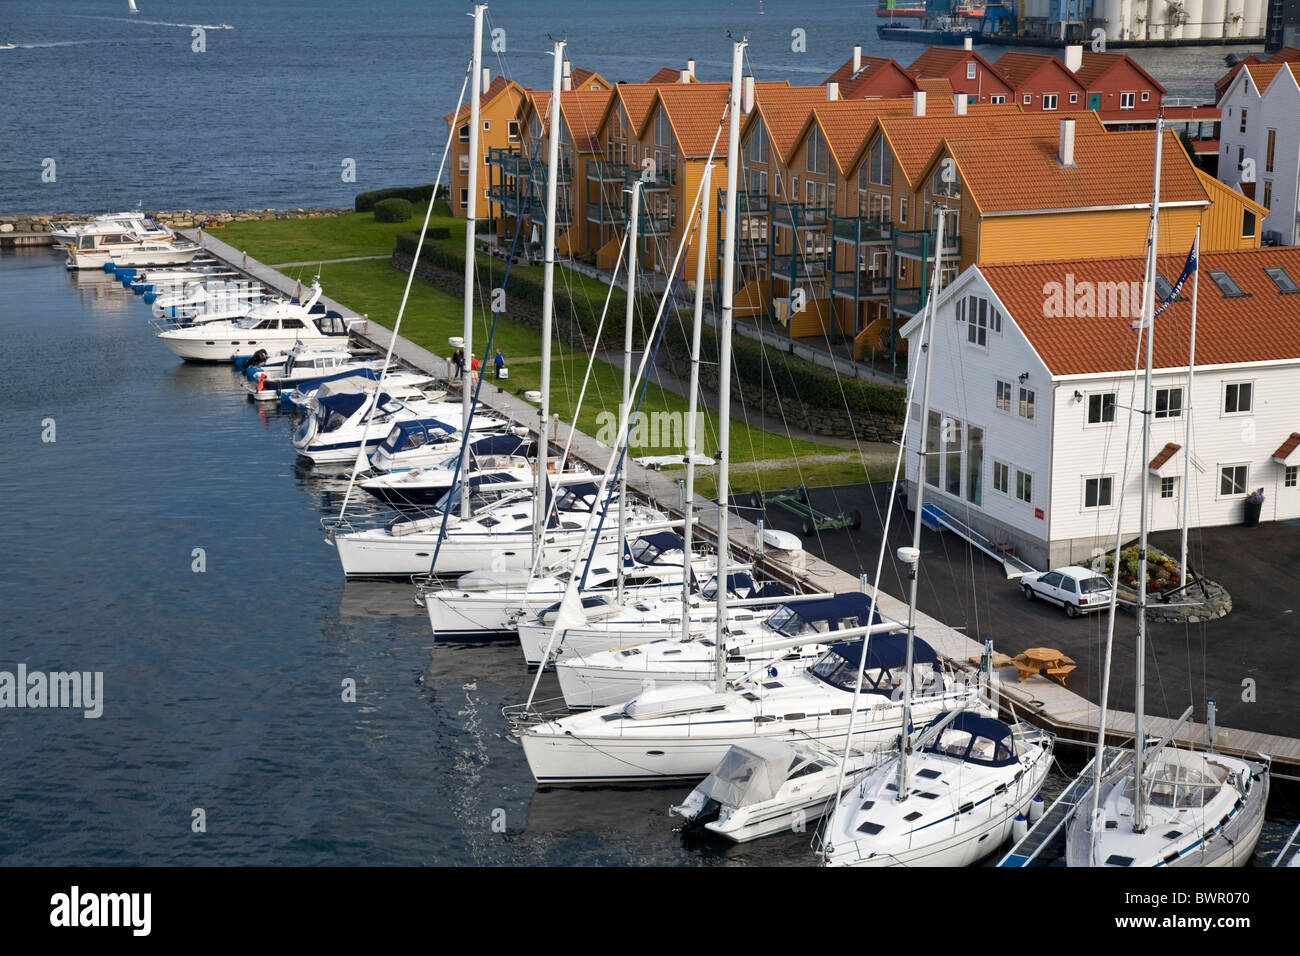 Stadt Stavanger Norwegen neuen Stadtteil Grasholmen Meer Europa Rogaland Nordskandinavien Wasser Yachten s Stockfoto